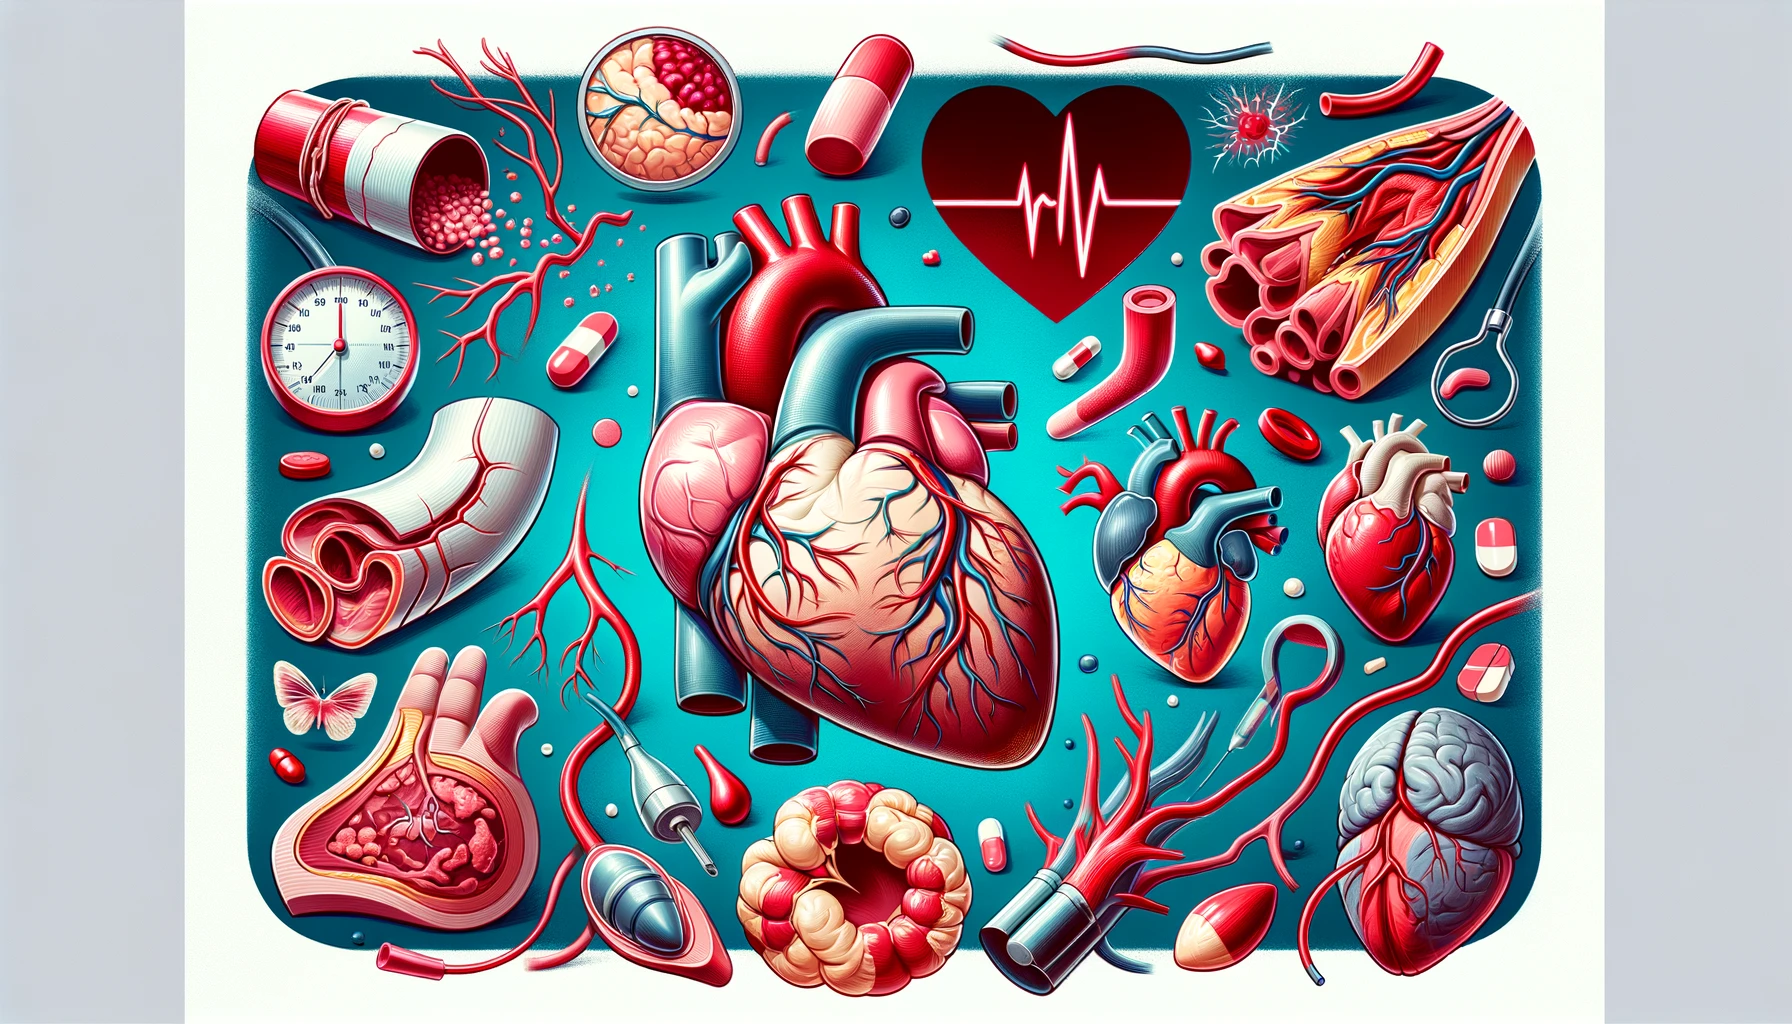 Las enfermedades cardiovasculares